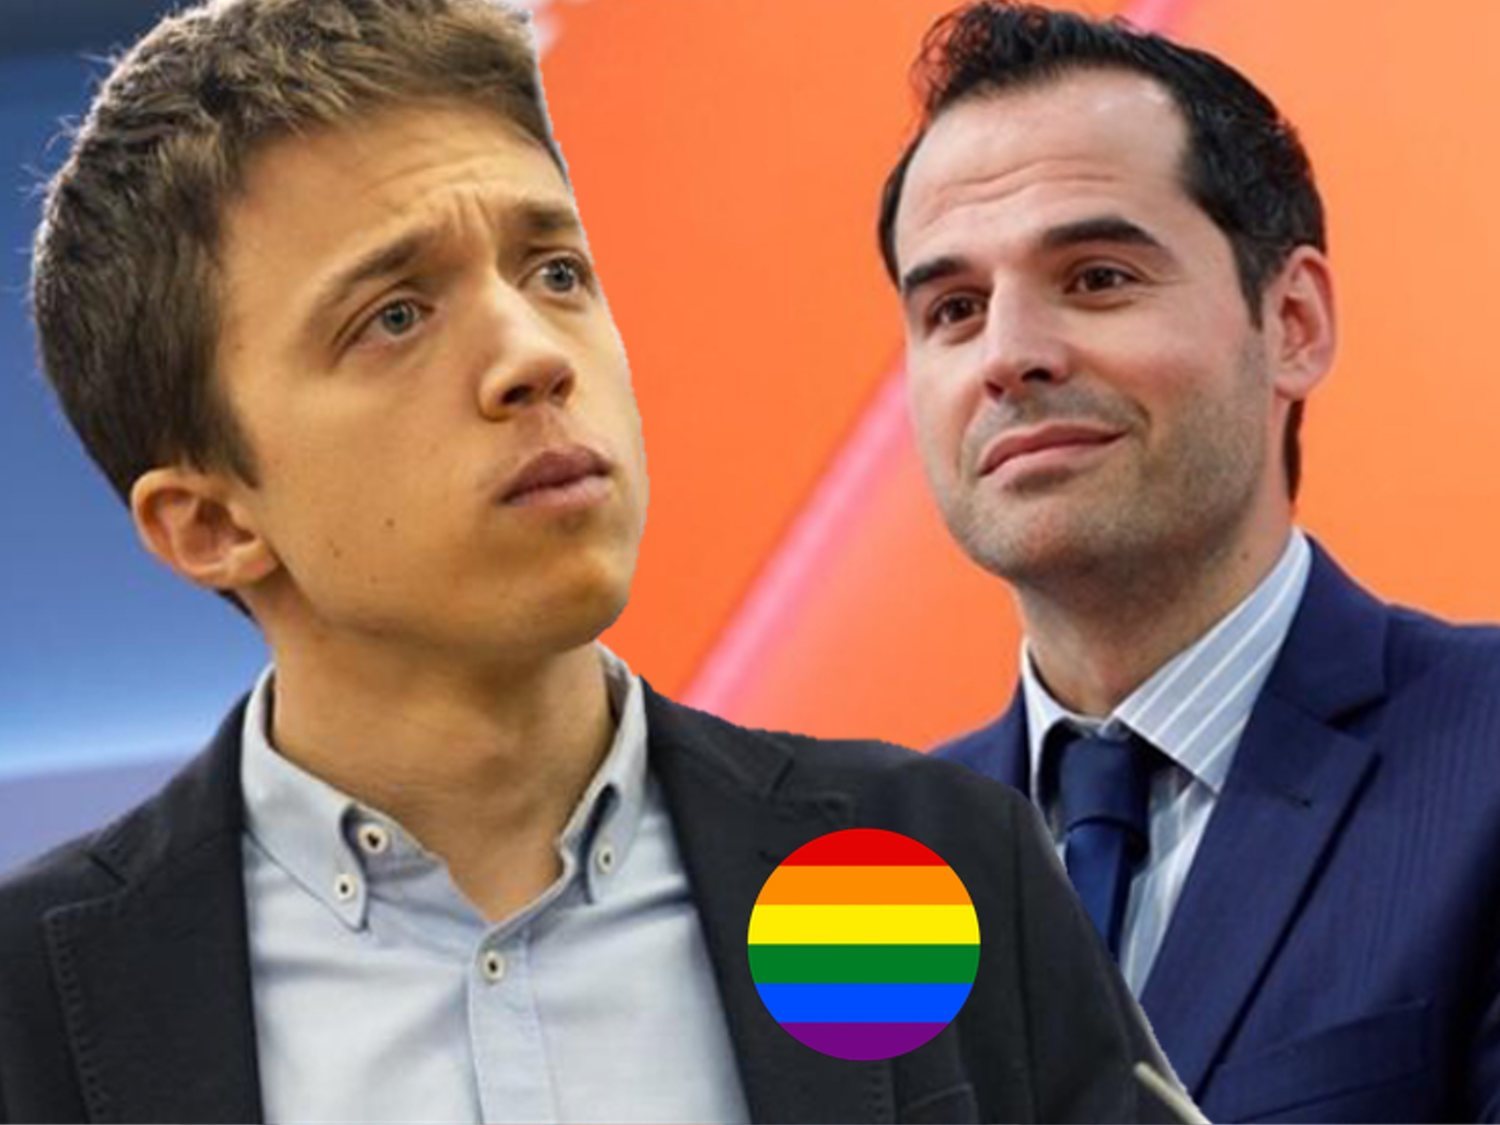 Errejón pide a Cs que no pasee la bandera LGTBI "para luego pactar con va a cerrar los armarios"